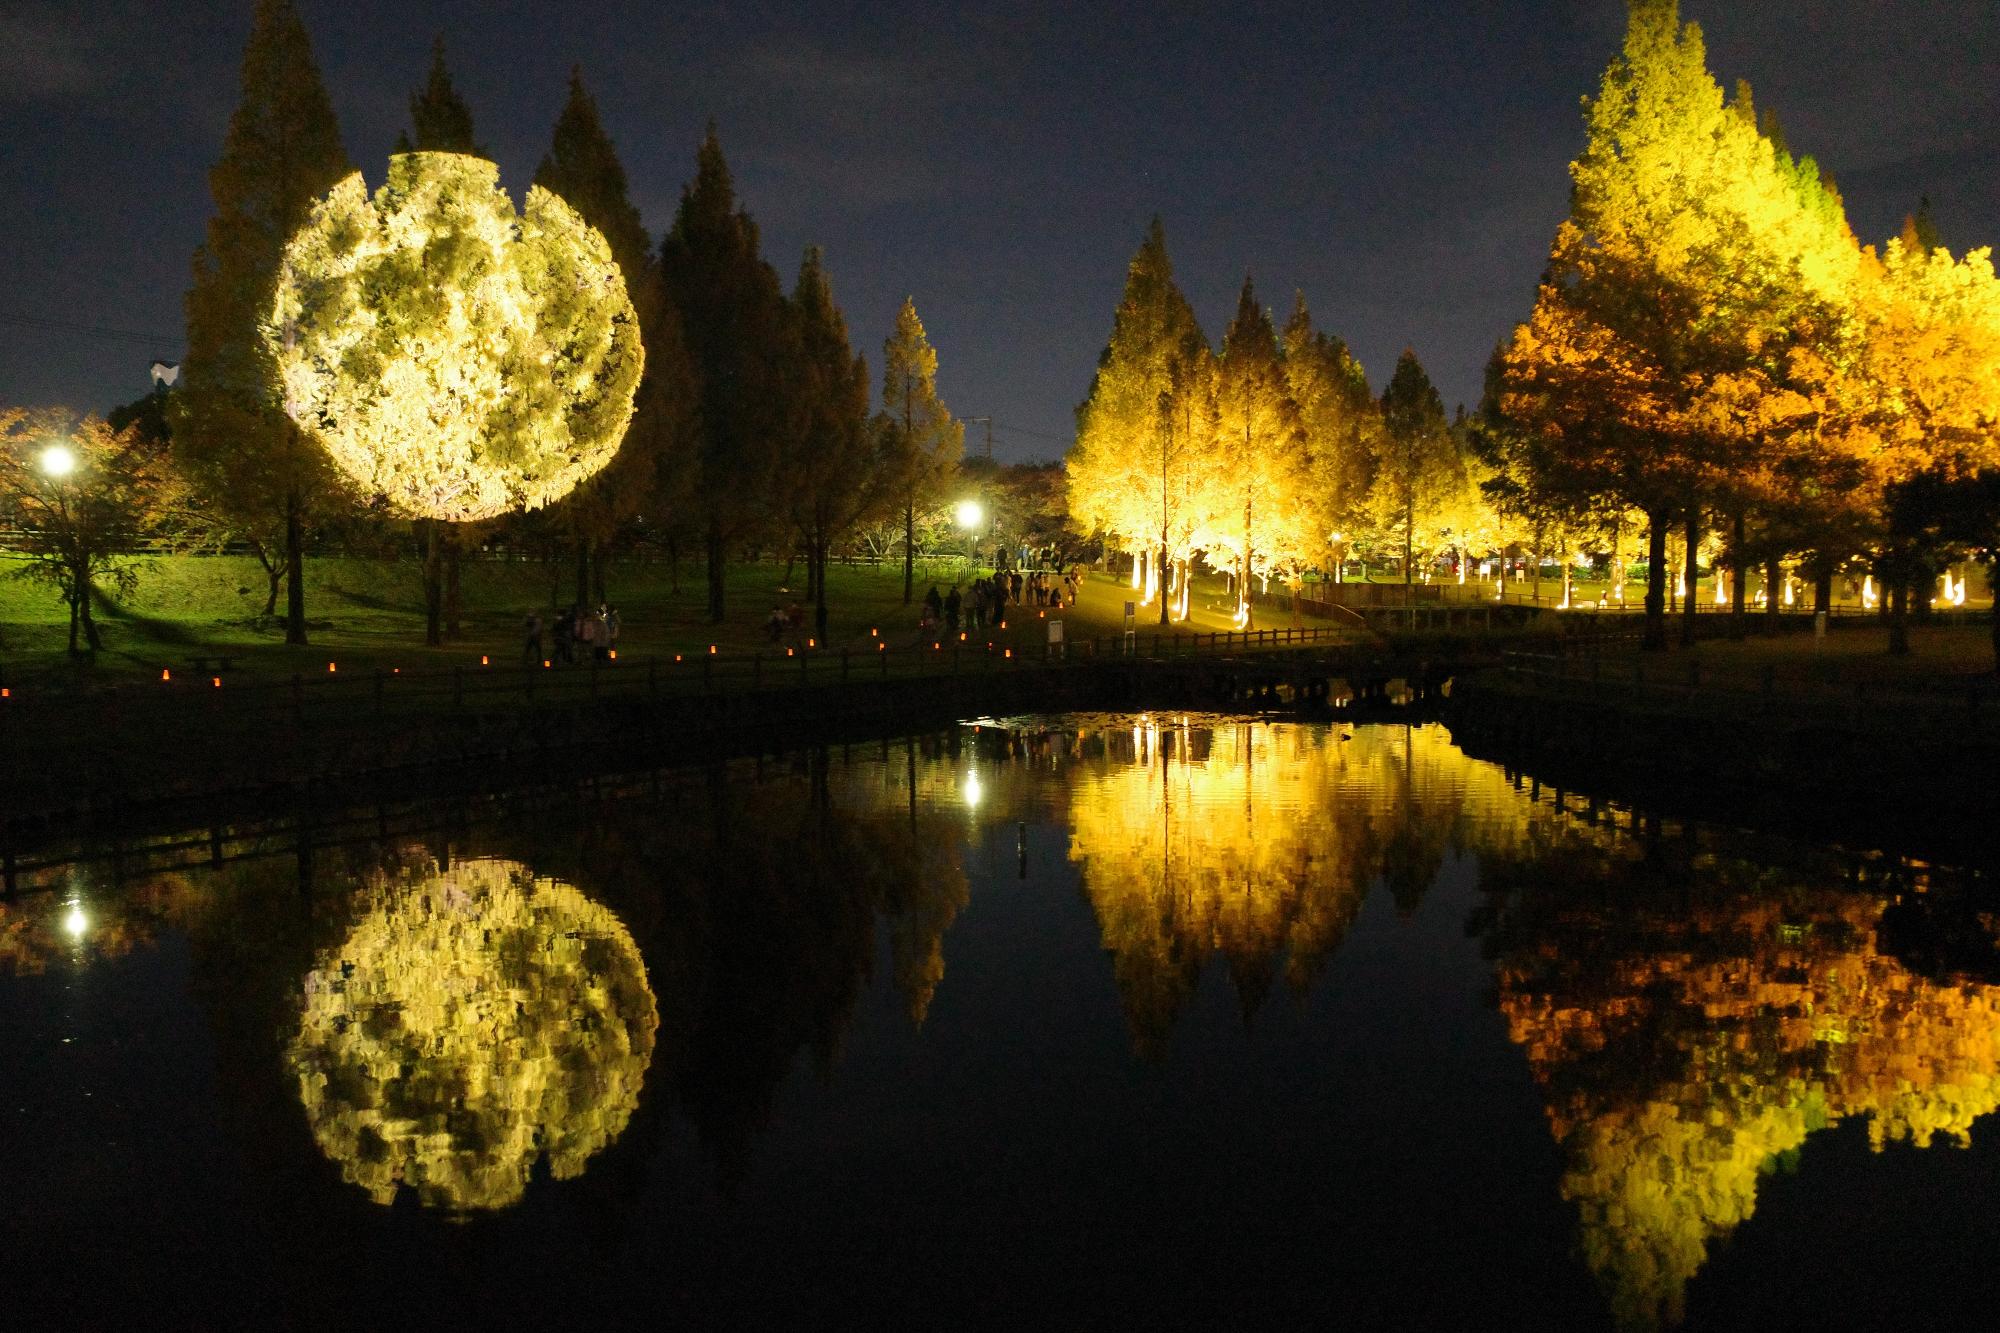 メタセコイアに投影された満月とライトアップされたメタセコイア並木が水面にも映し出されています